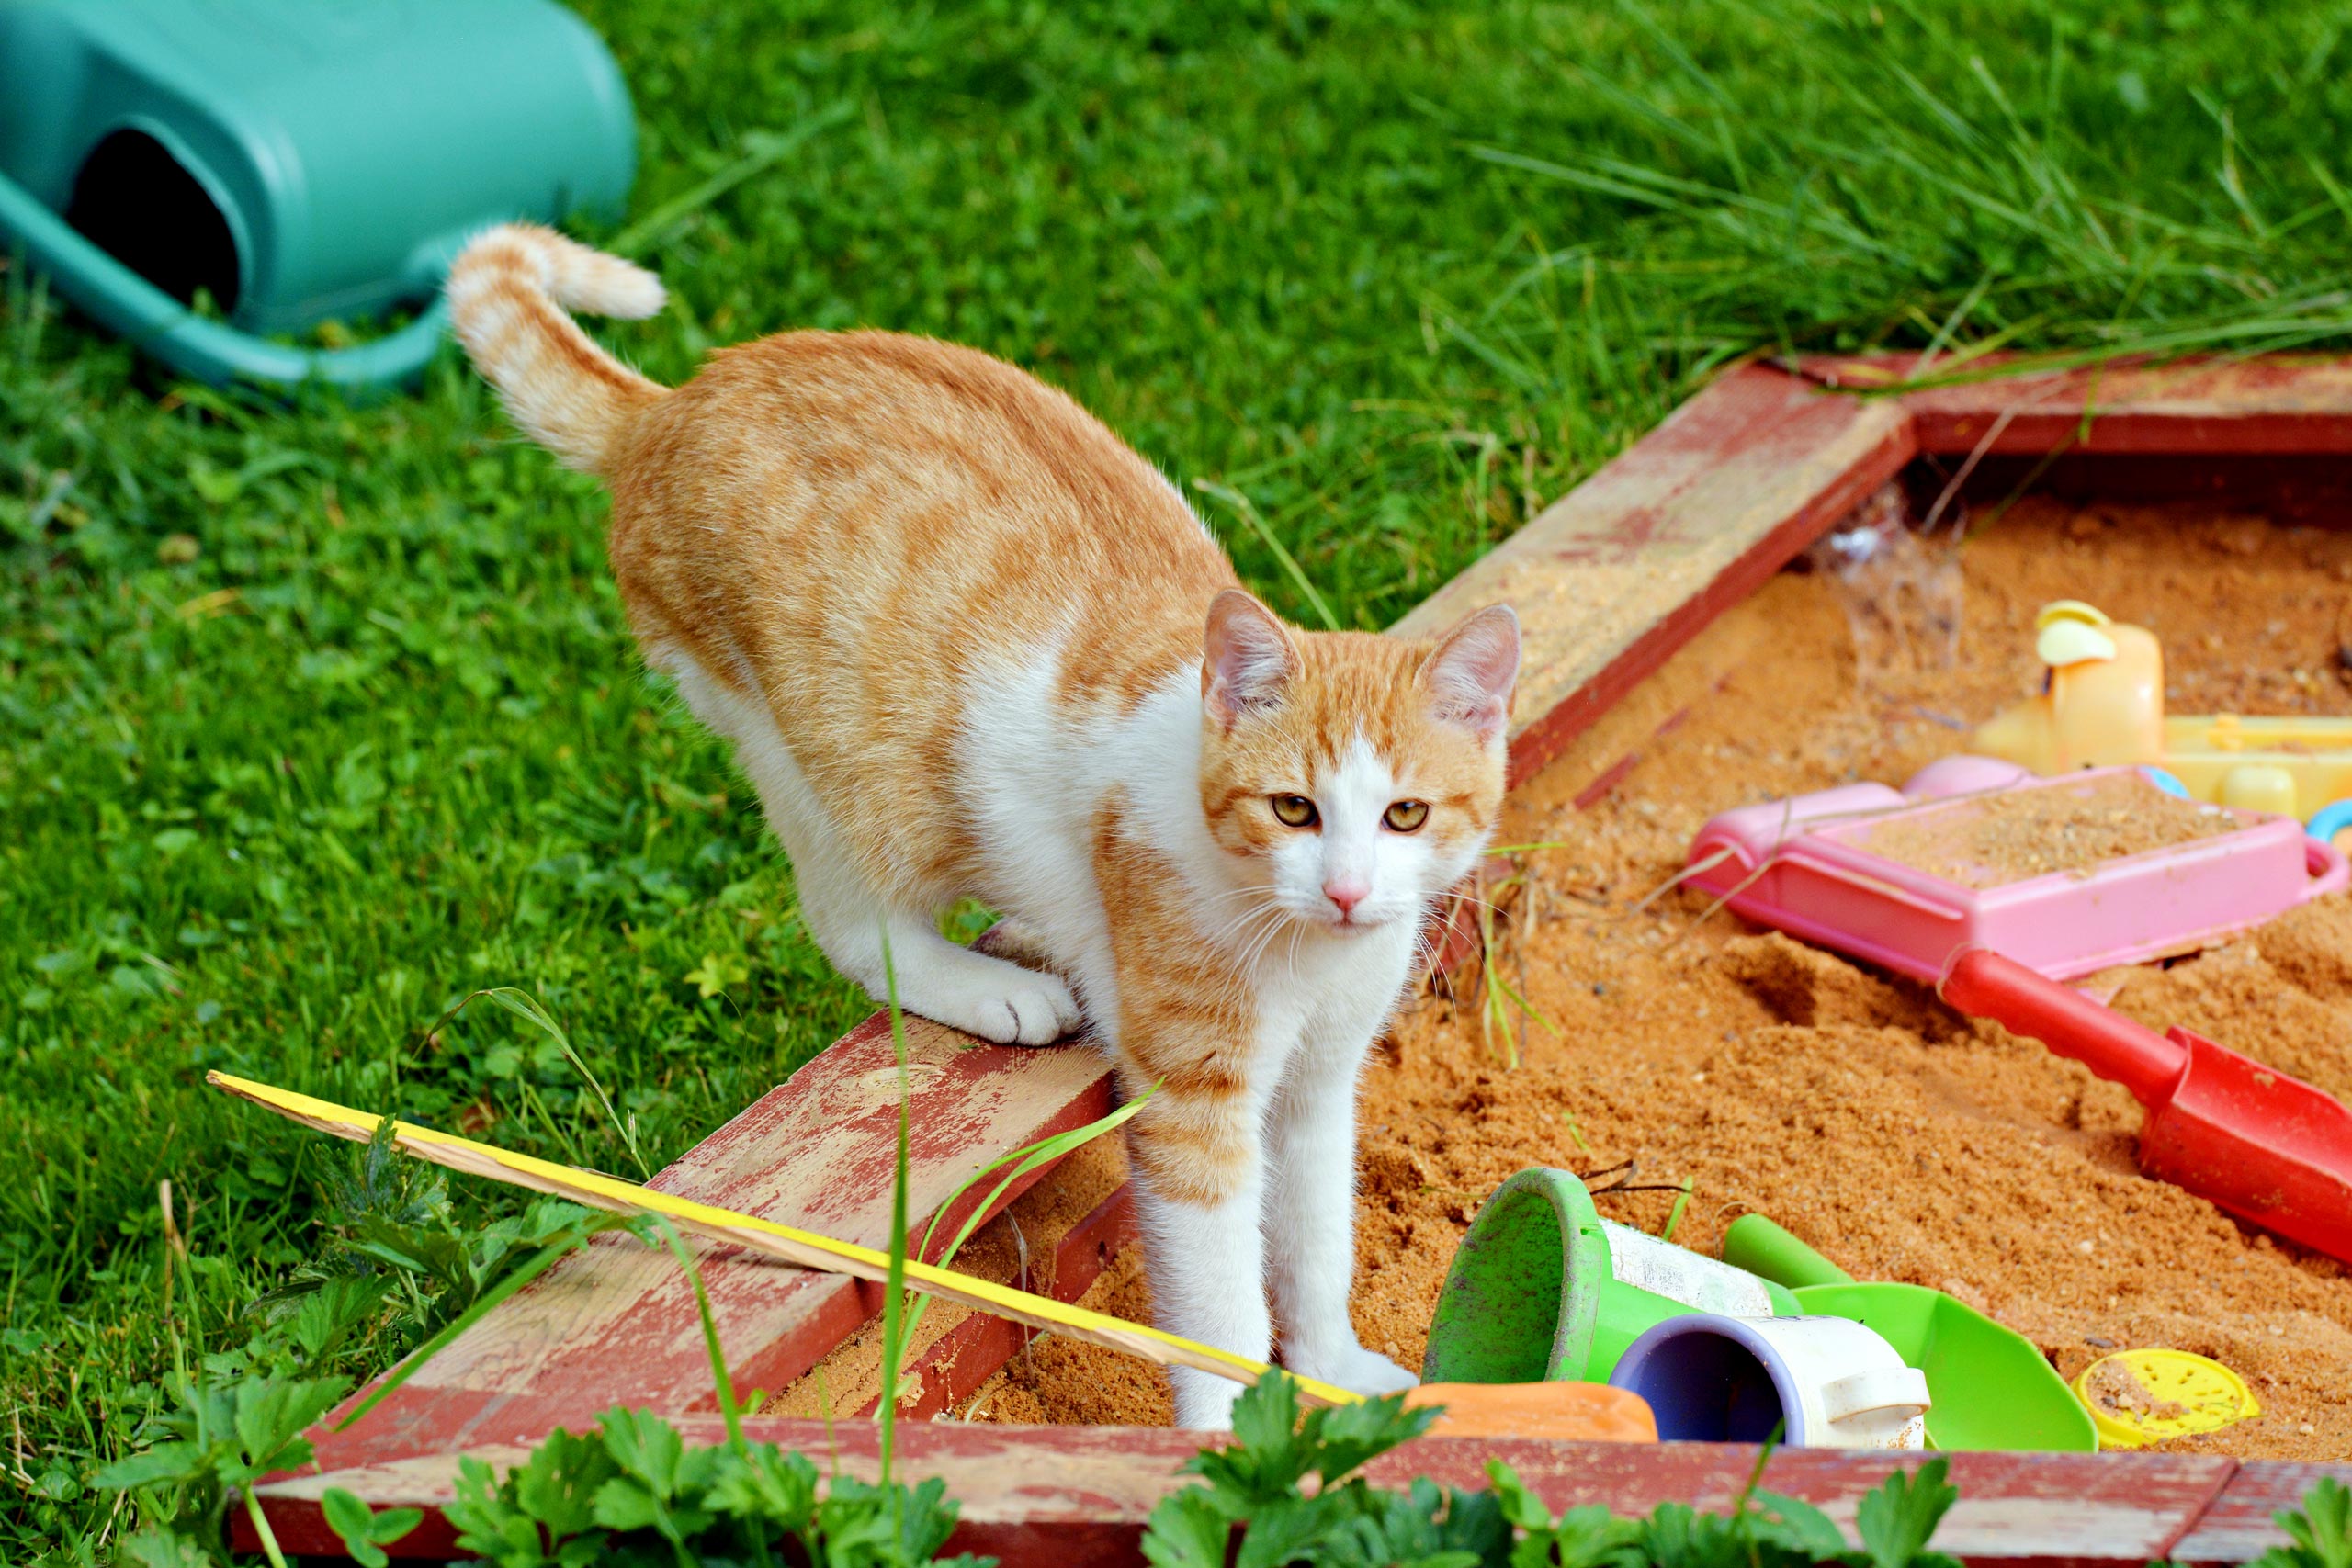 Katzen vom Sandkasten fernhalten: Das hilft gegen Katzenkot